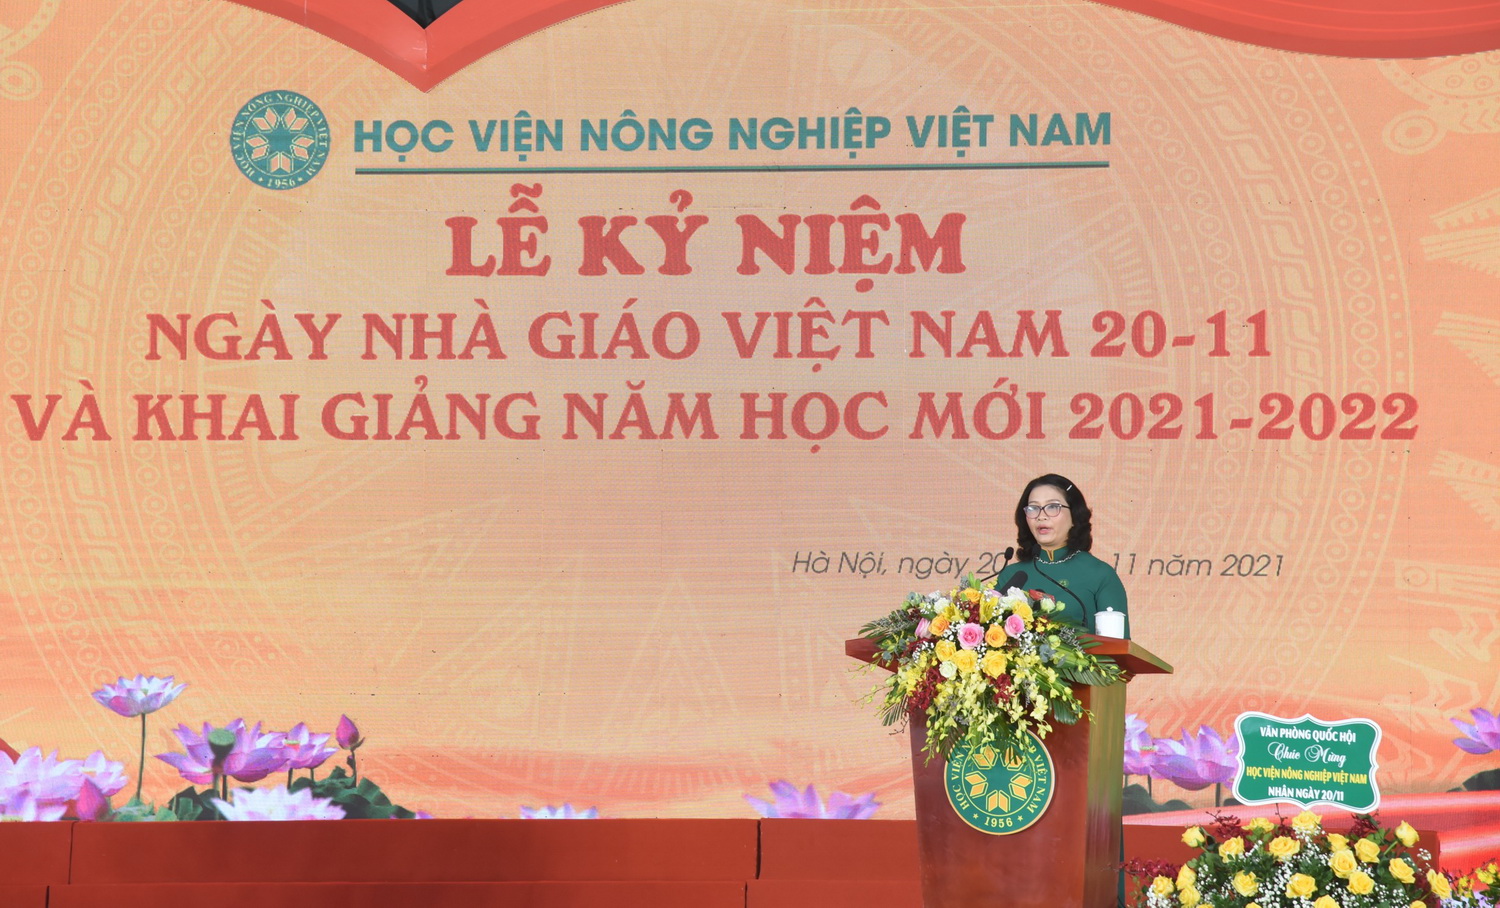 Học viện Nông nghiệp Việt Nam cùng các trường phổ thông bàn cách dạy - học an toàn trong dịch Covid-19 - Ảnh 2.